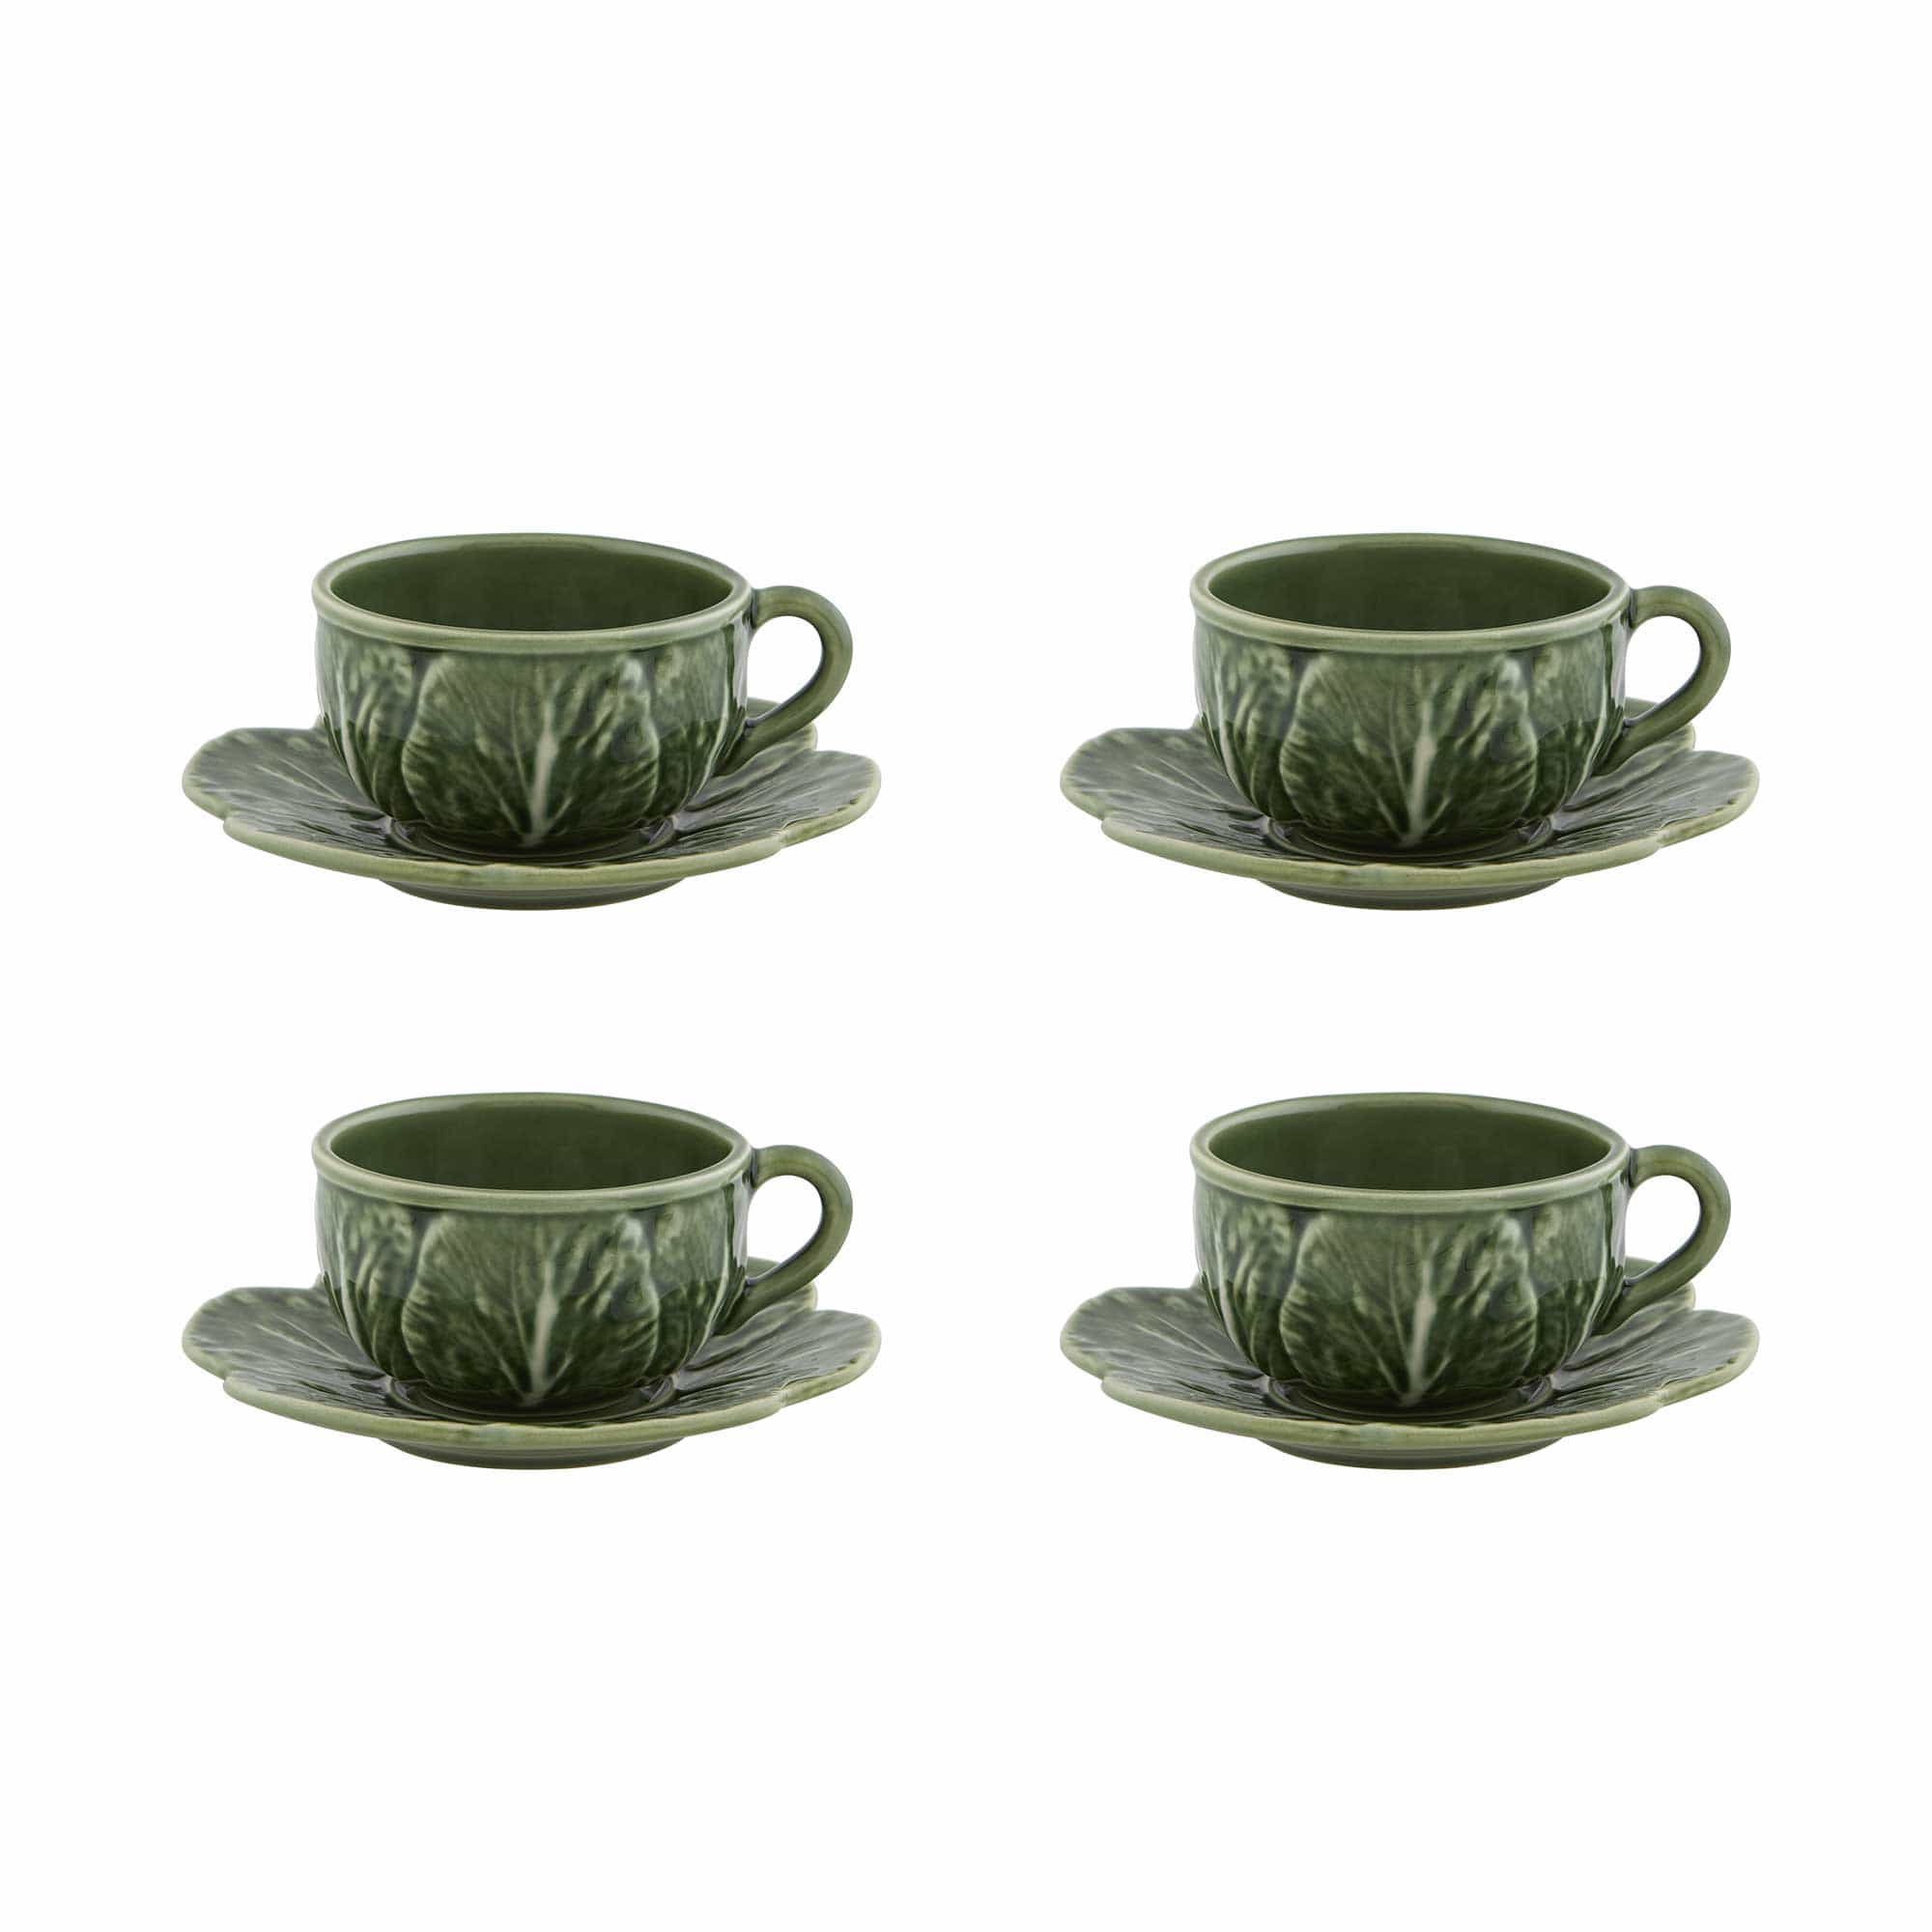 Bordallo Pinheiro Bordallo Pinheiro Cabbage Tea Cup and Saucer, Set of 4 - Green 65023417